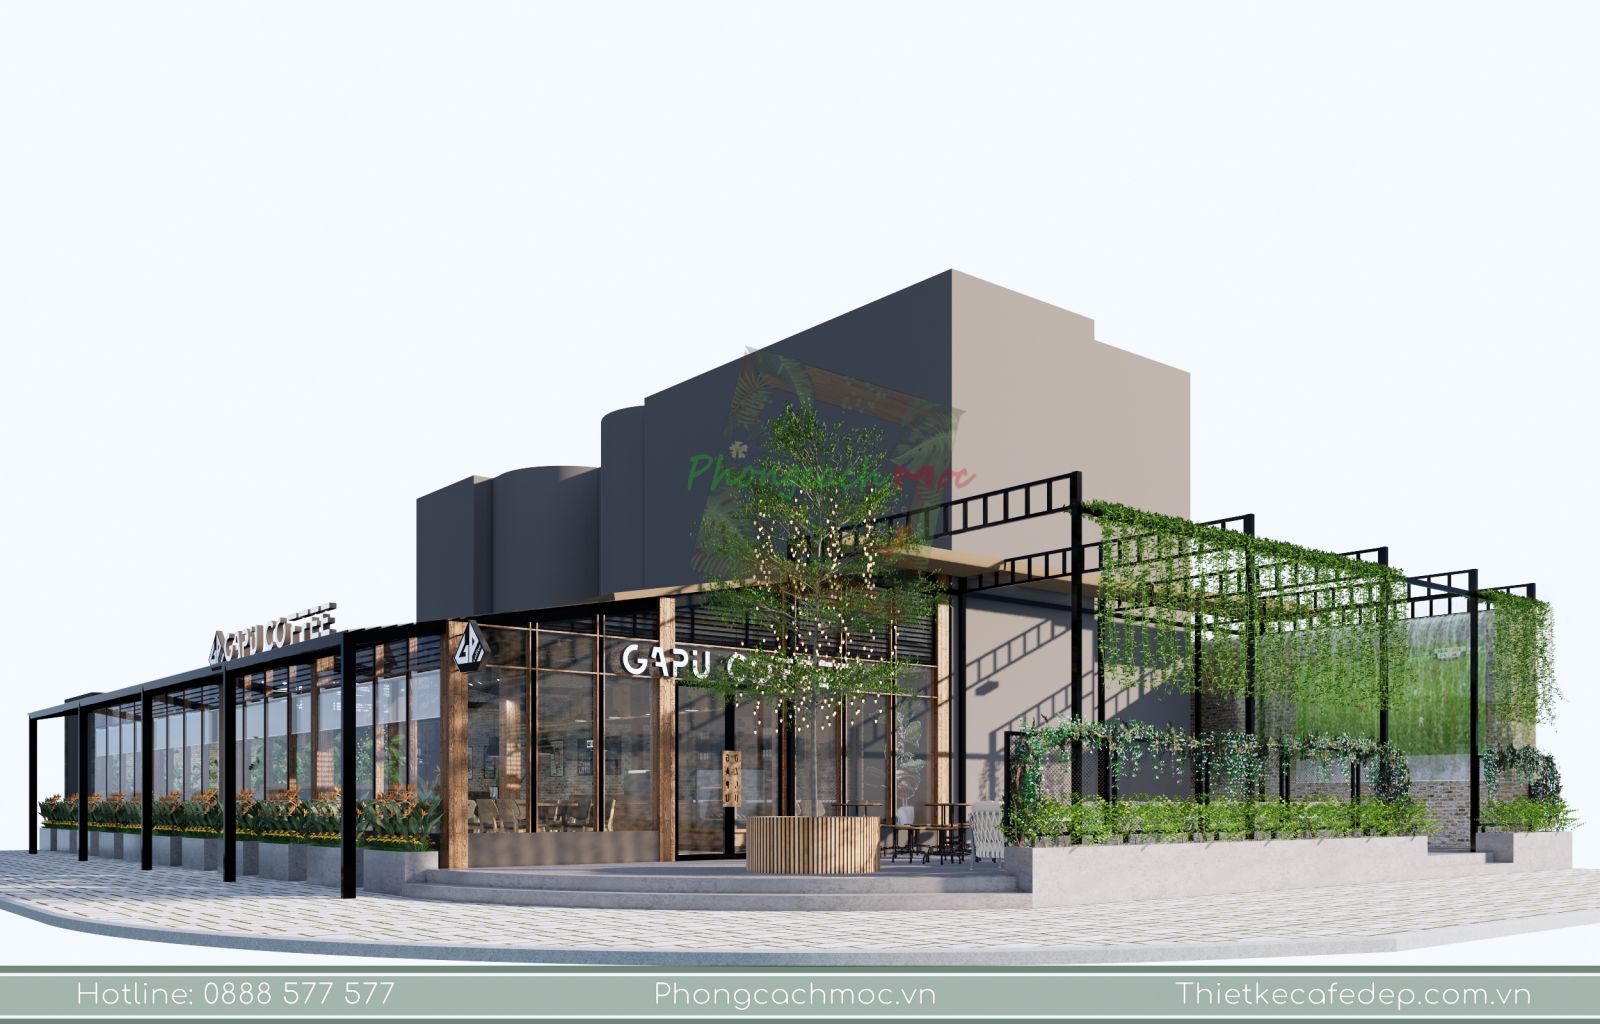 Thiết kế quán cafe 2 mặt tiền Gapu Coffee với phong cách sân vườn ...